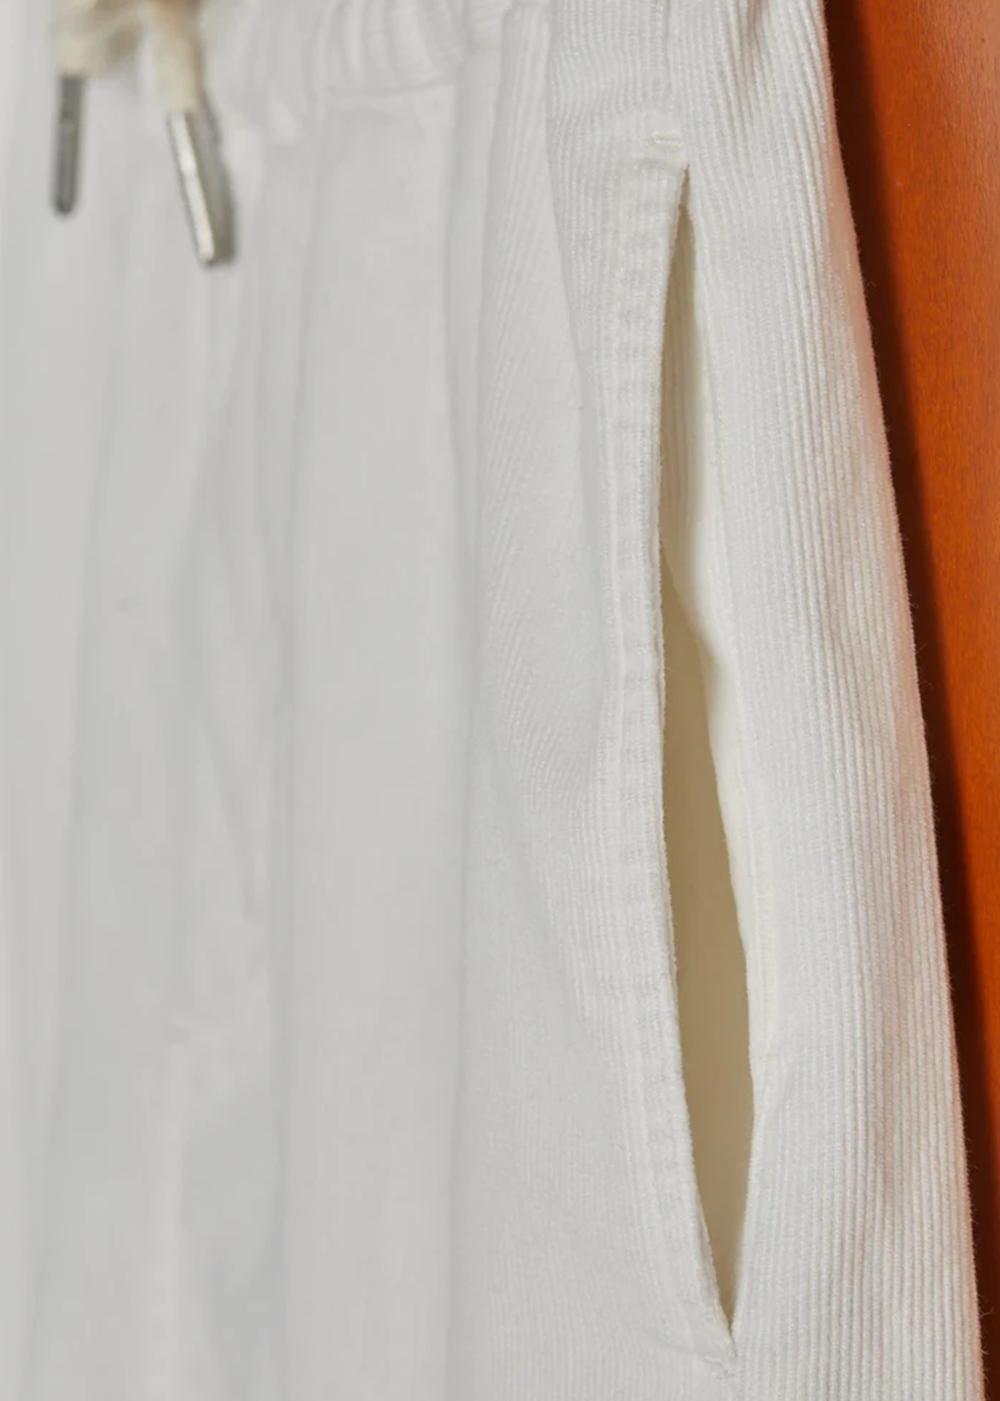 Cord Men's Shorts - White - Portuguese Flannel Canada - Danali